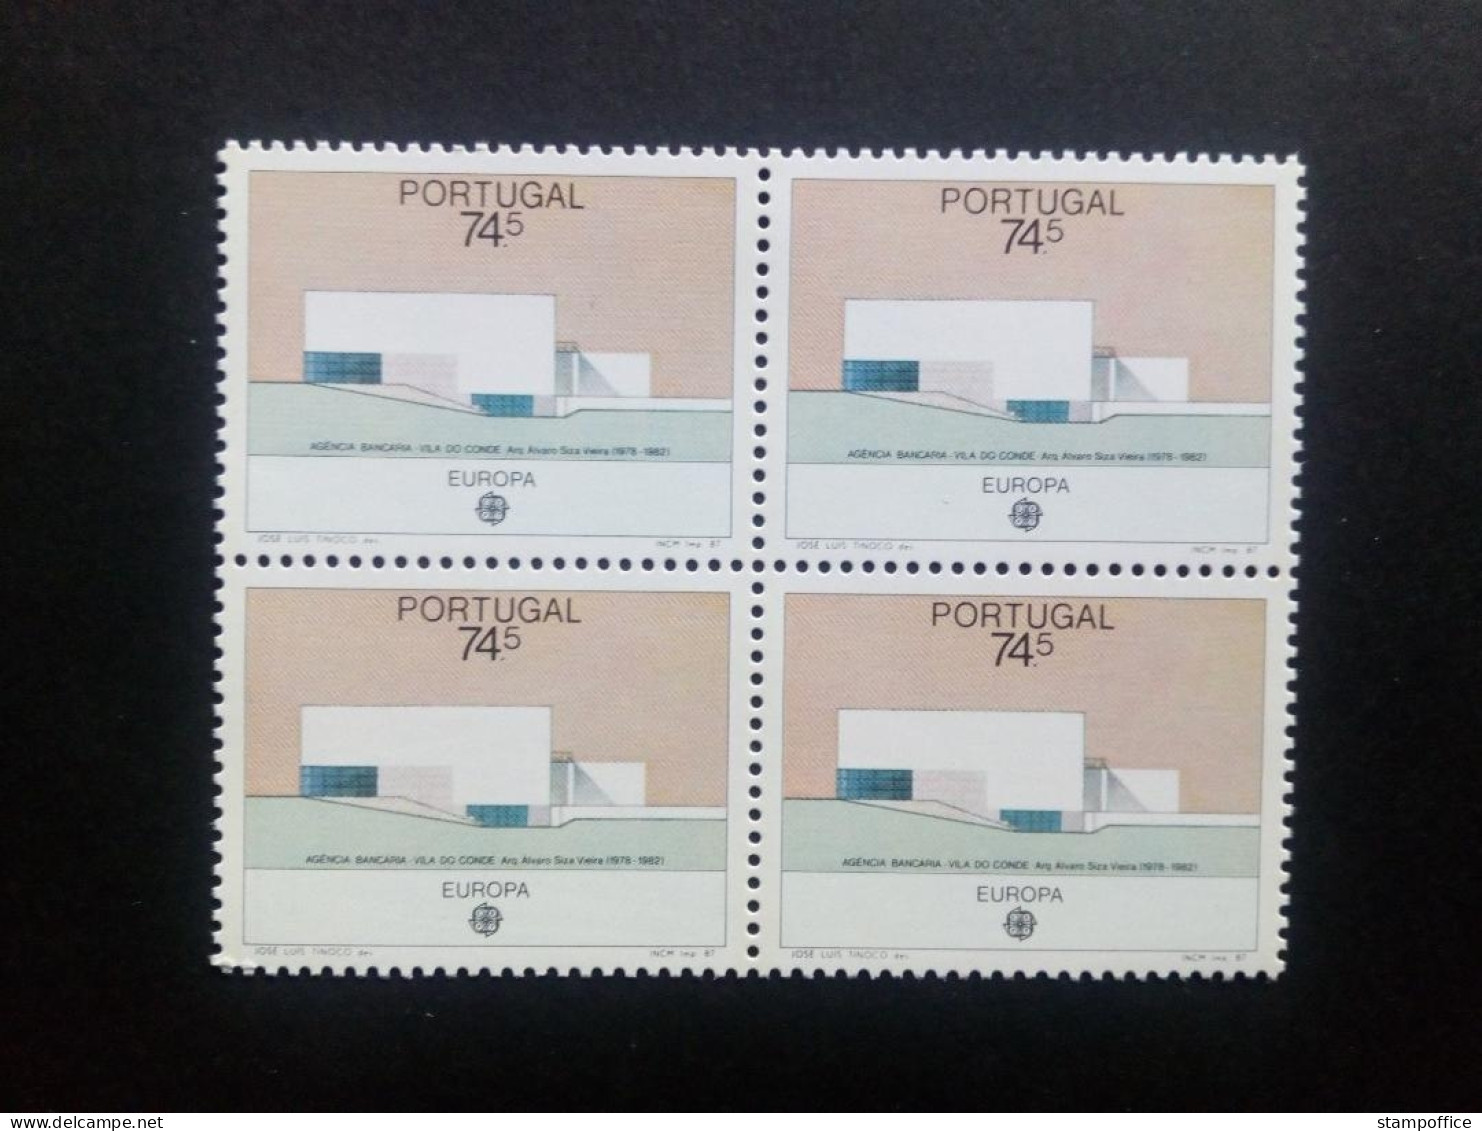 PORTUGAL MI-NR. 1722 POSTFRISCH(MINT) 4er BLOCK EUROPA 1987 - MODERNE ARCHITEKTUR BANKGEBÄUDE - 1987